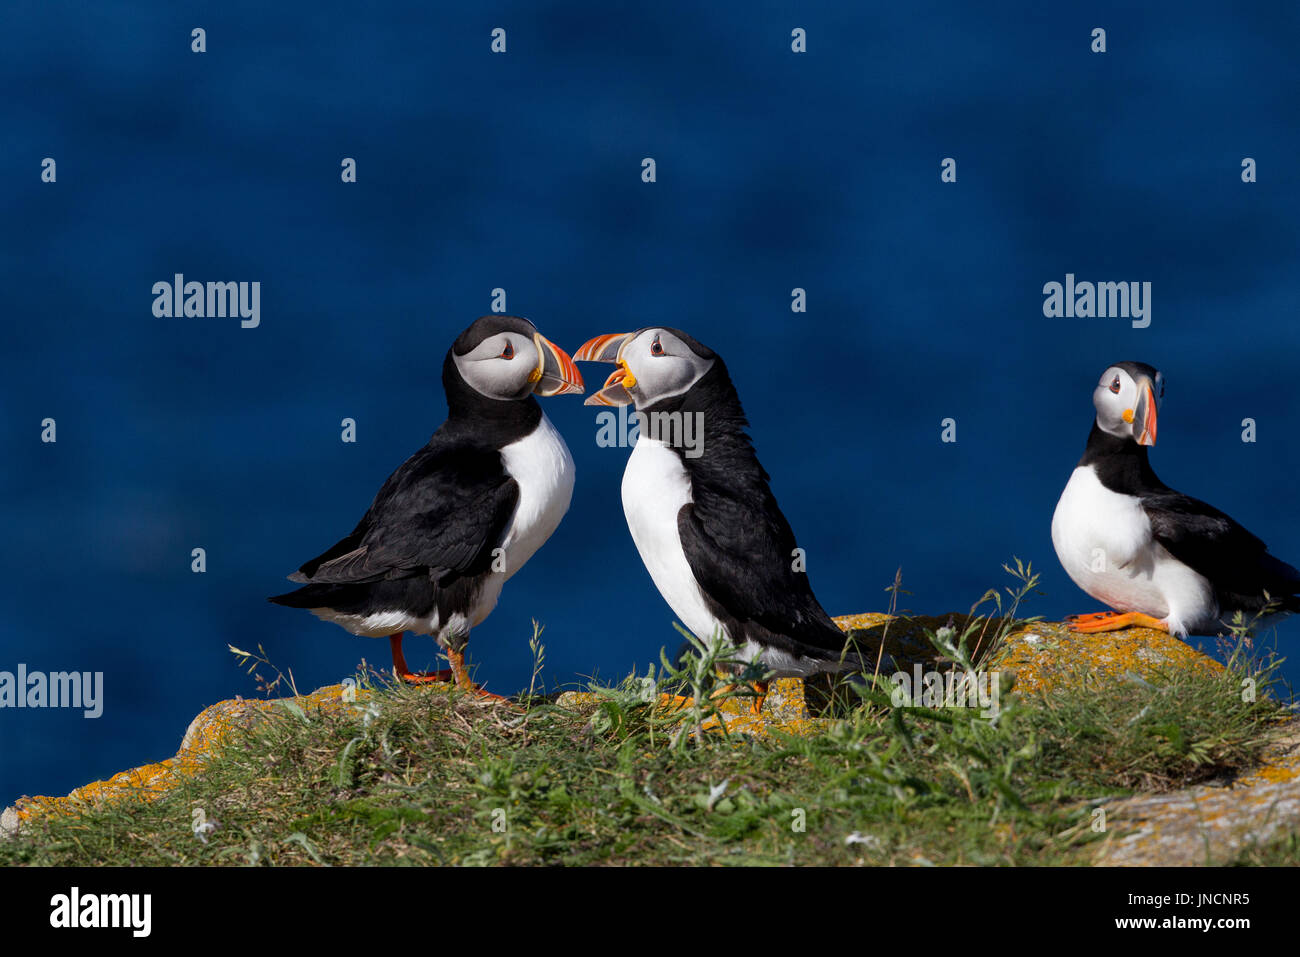 Atlantic i puffini interagire Foto Stock